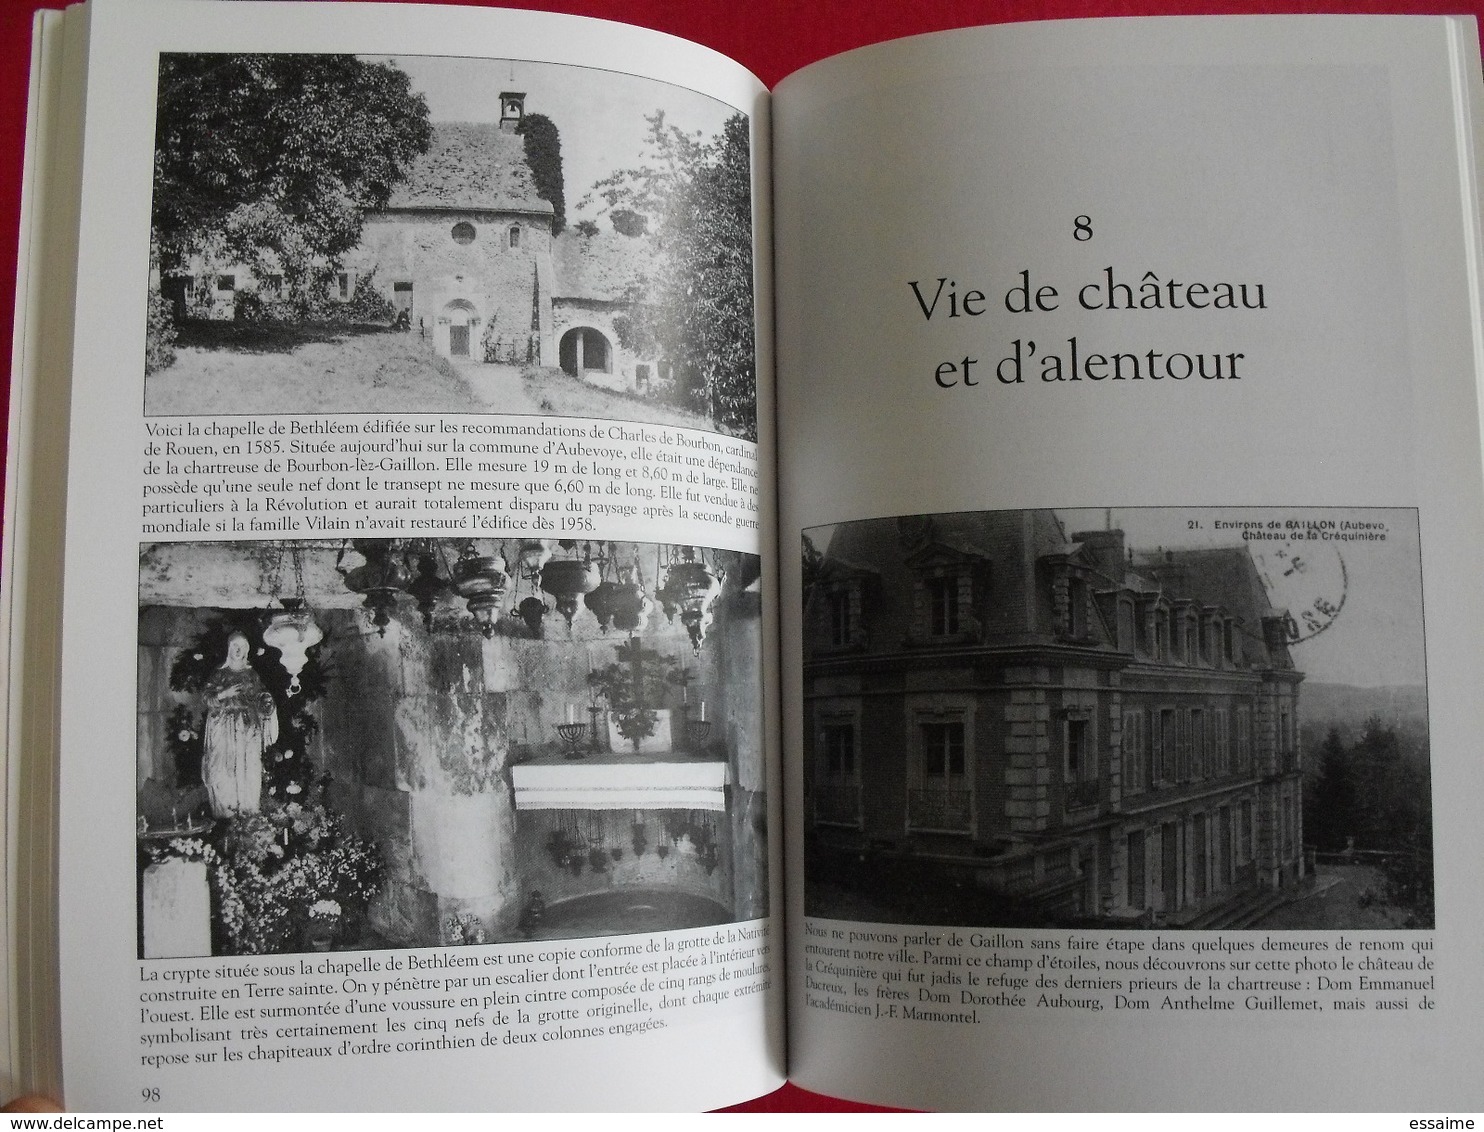 Gaillon. Normandie. Thierry Garnier. Mémoire en images. éditions Alan Sutton. 2004. cartes postales photos